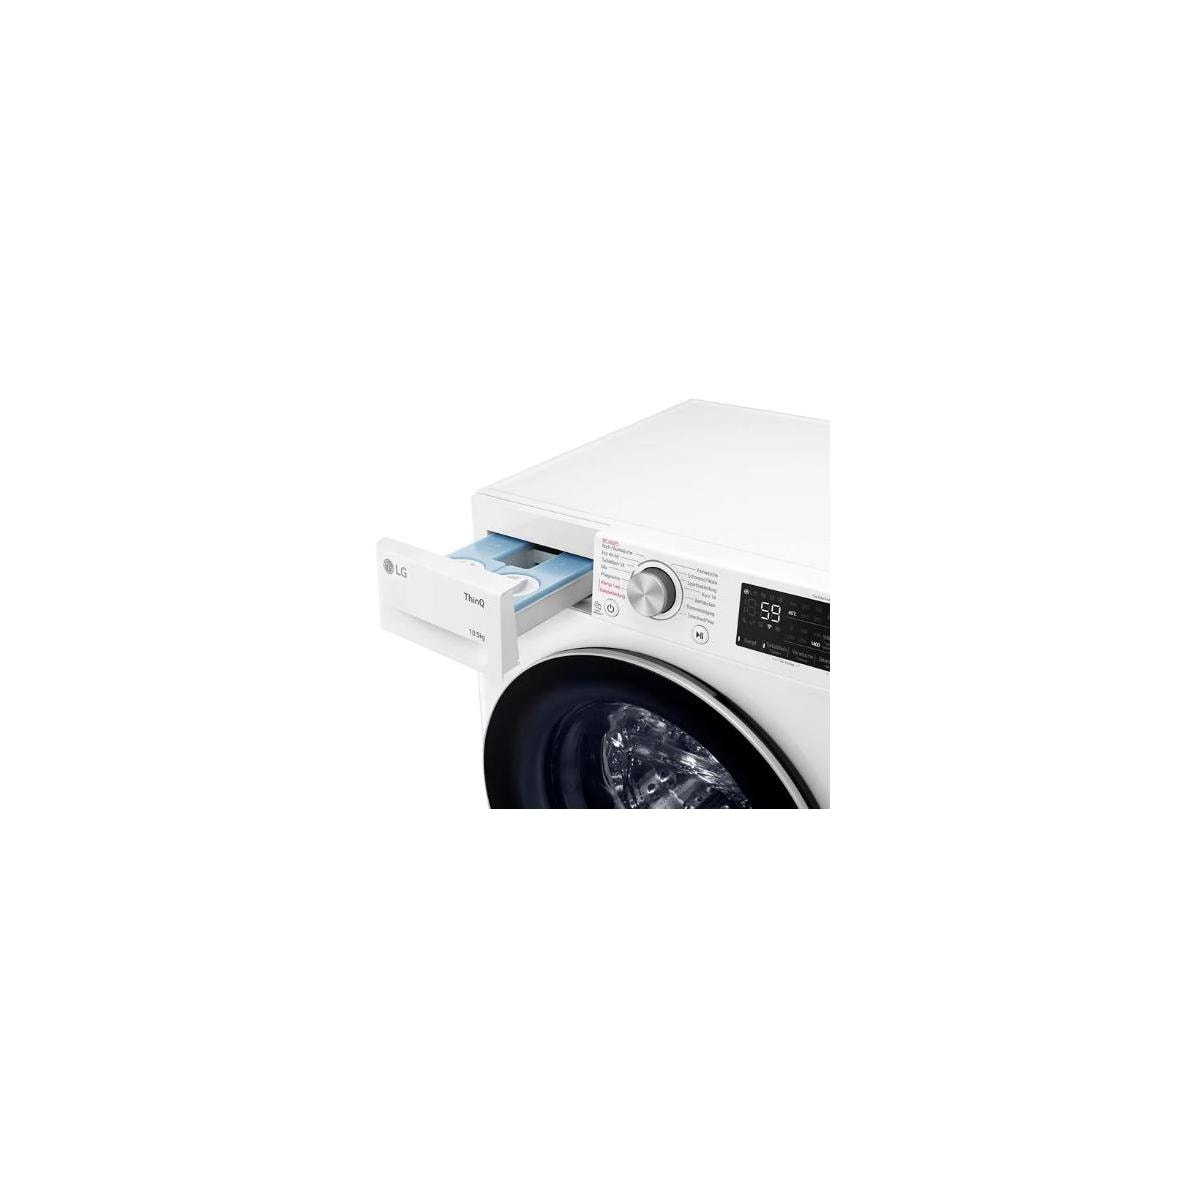 LG F4WV75X1 10,5kg Frontlader Waschmaschine, weiß cm Lock, Autodosierung, Kindersicherung, 60 breit, Mengenautomatik, Wagner Elektroshop Aqua